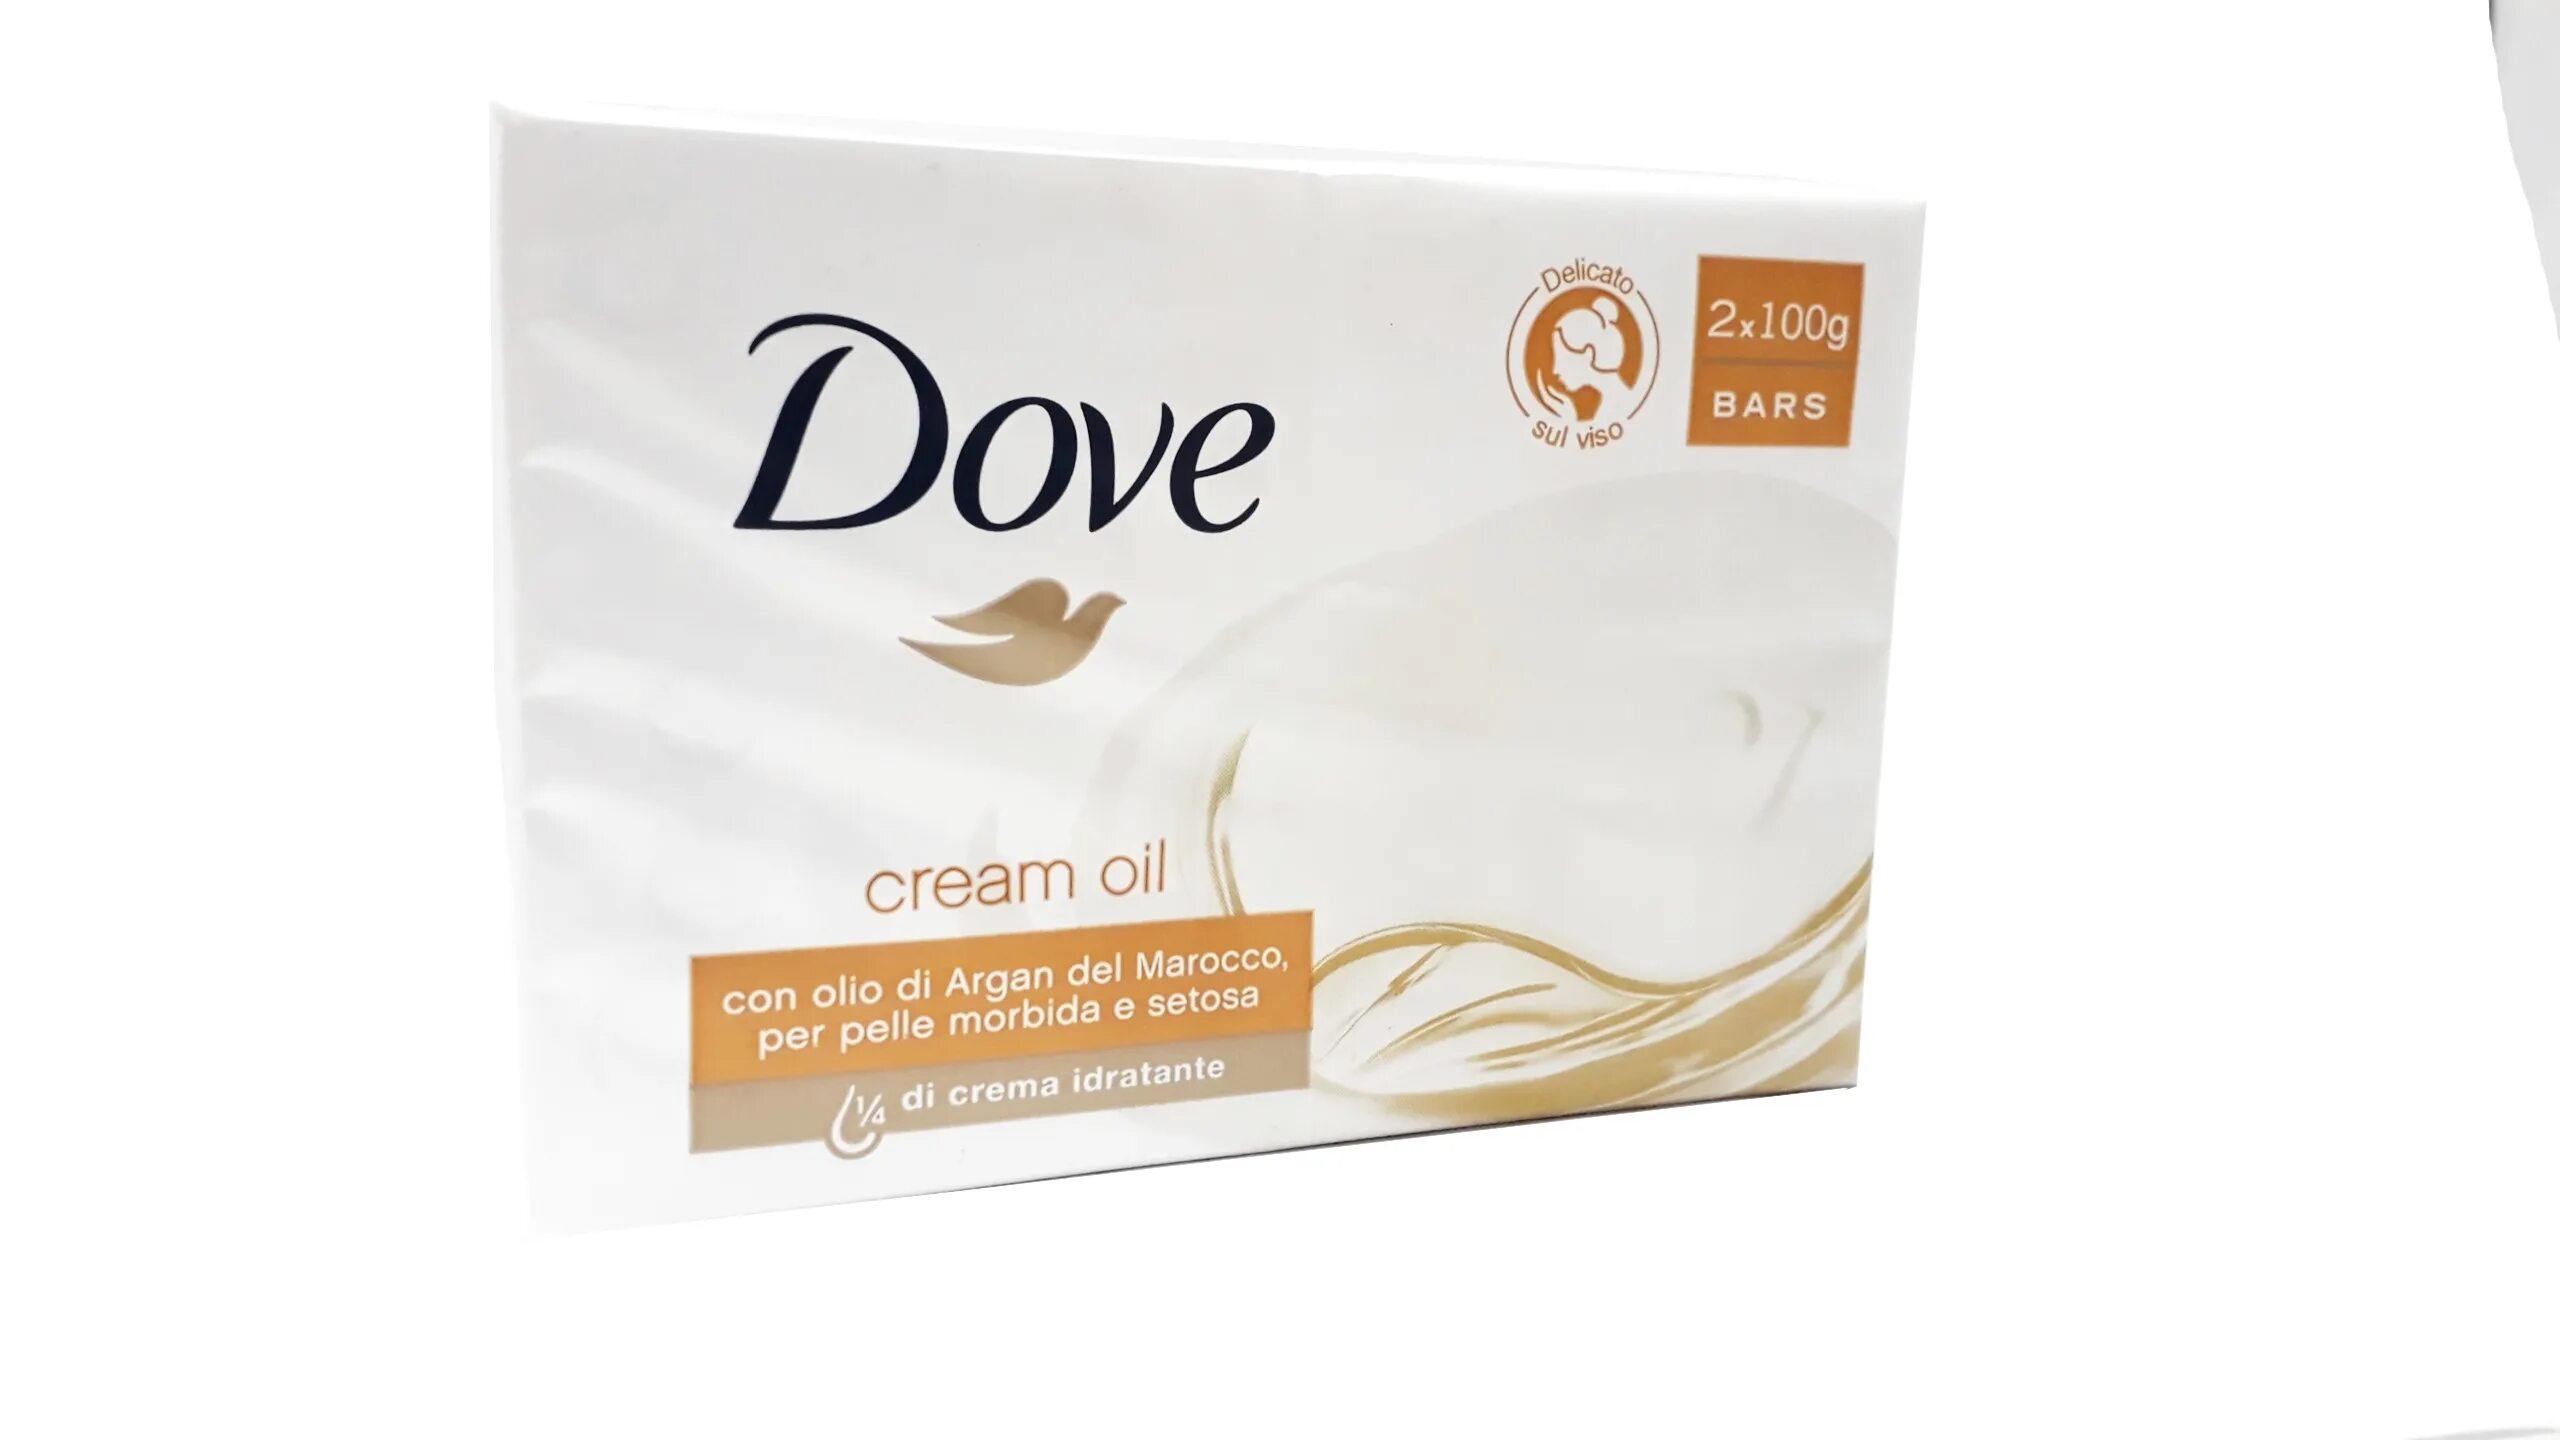 Туалетная мыло дав. Мыло dove Oil. Dove 100 gr Cream Oil. Мыло dove драгоценные масла, 100гр. Dove крем-мыло Argan Oil 135г.